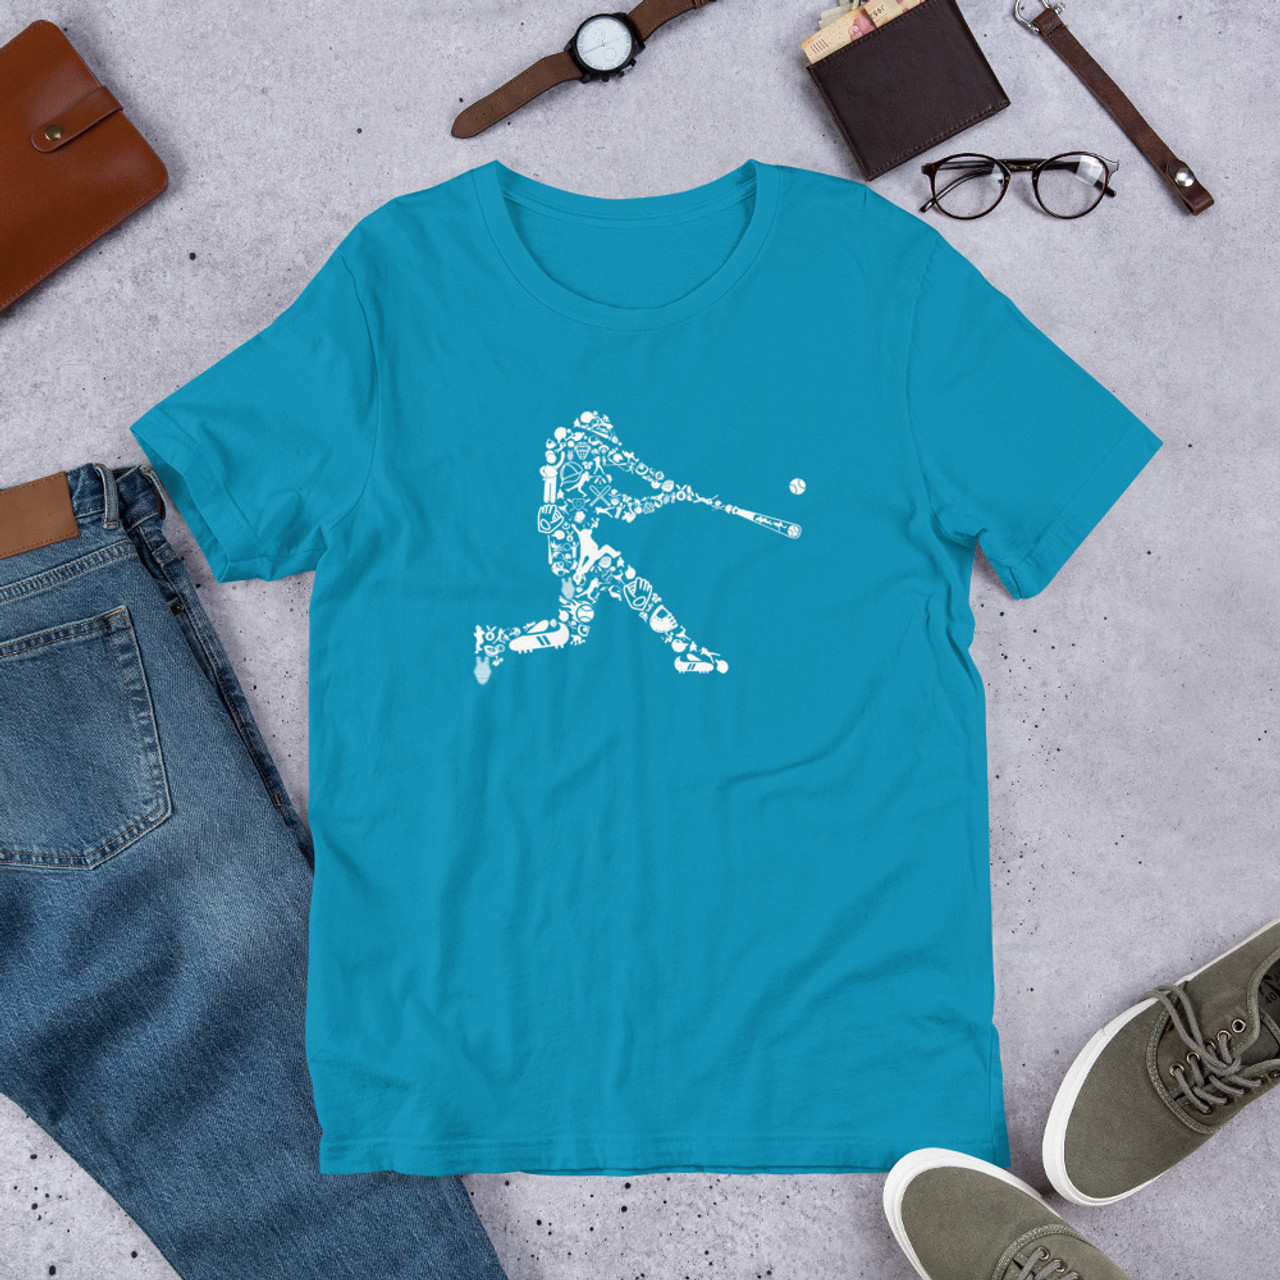 Aqua T-Shirt - Bella + Canvas 3001 Baseball Player